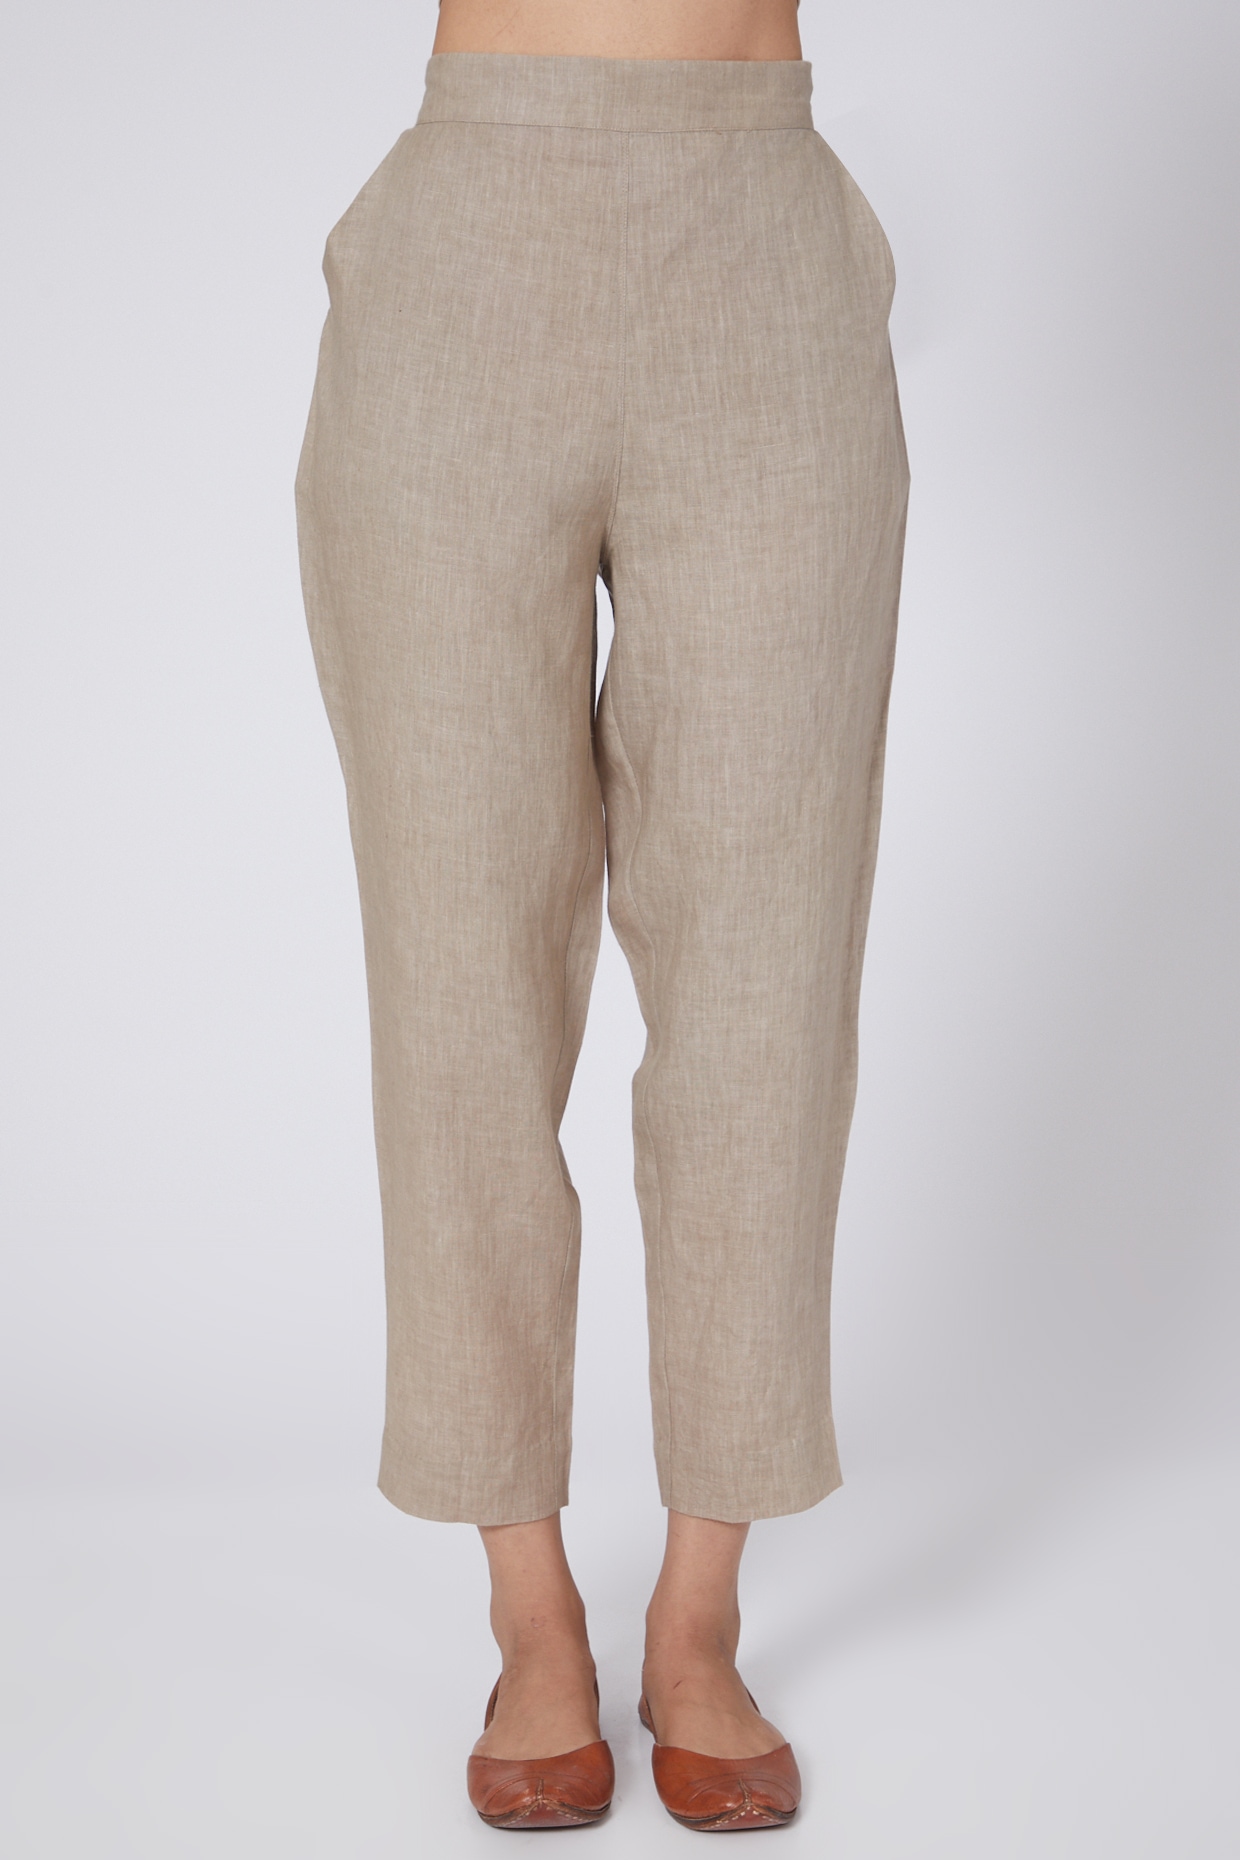 Verdigris | Linen Tapered Leg Trouser | WoolOvers UK